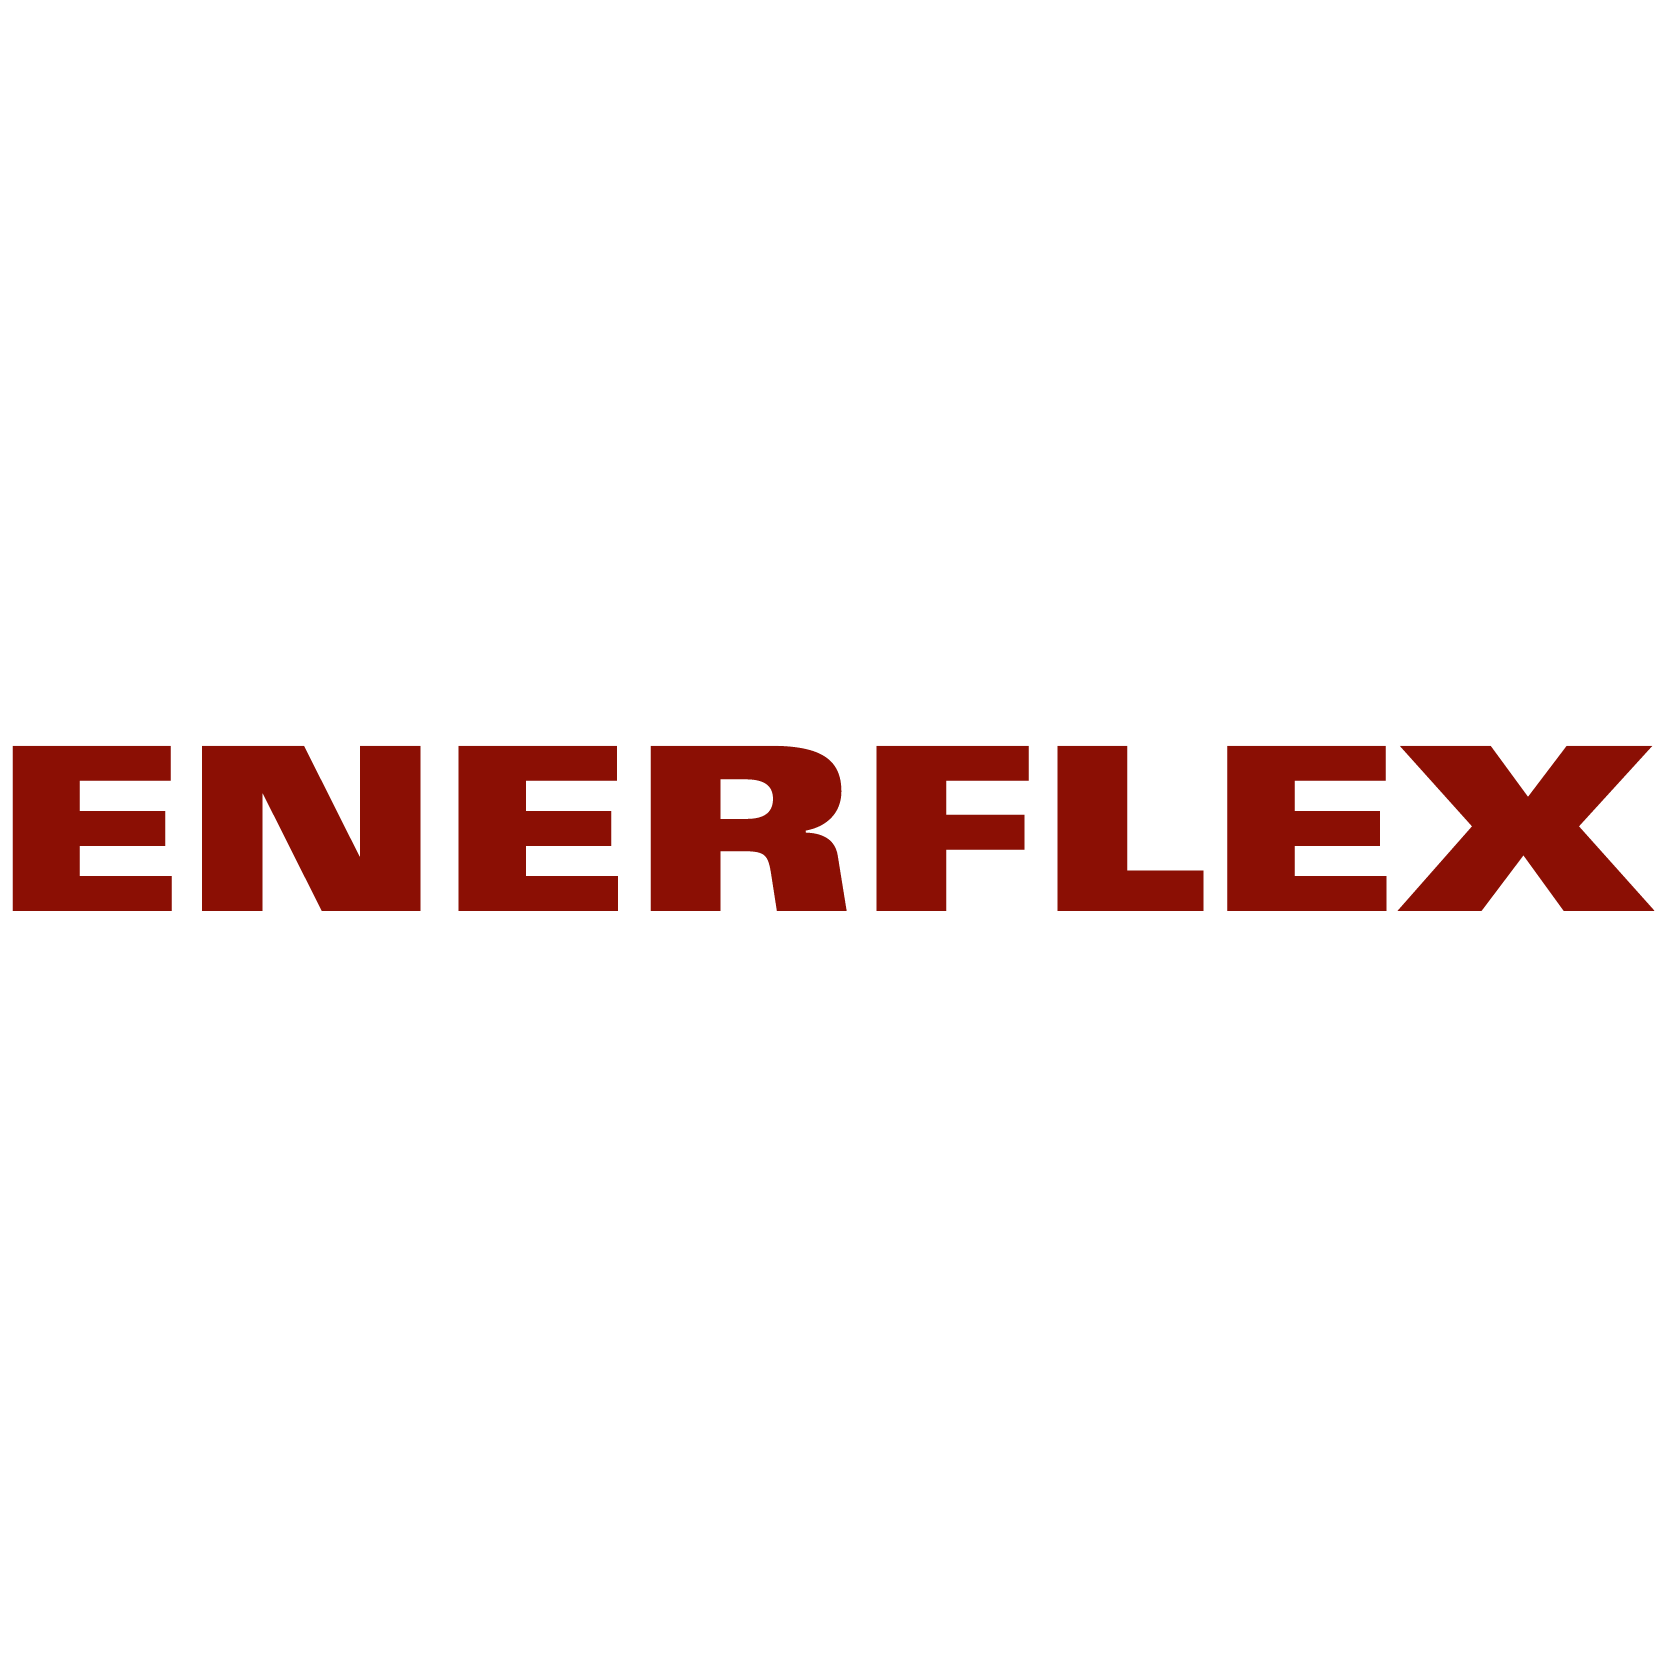 ENERFLEX LTD